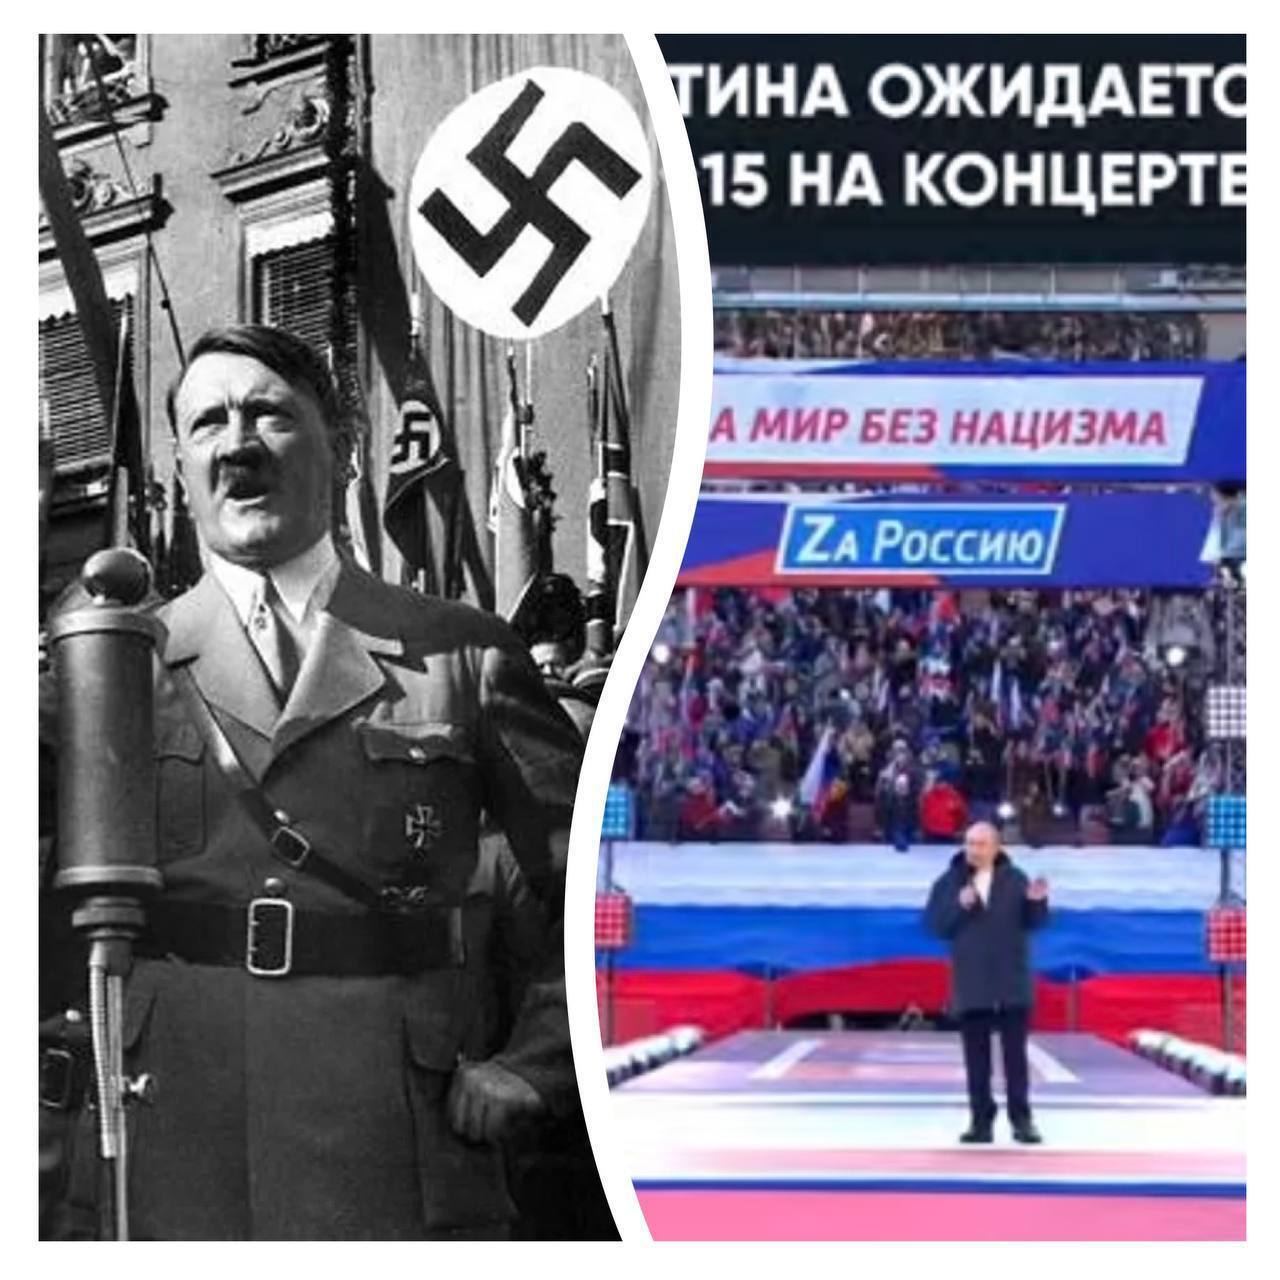 Російські гасла порівняли з фашистською свастикою та політикою Третього рейху